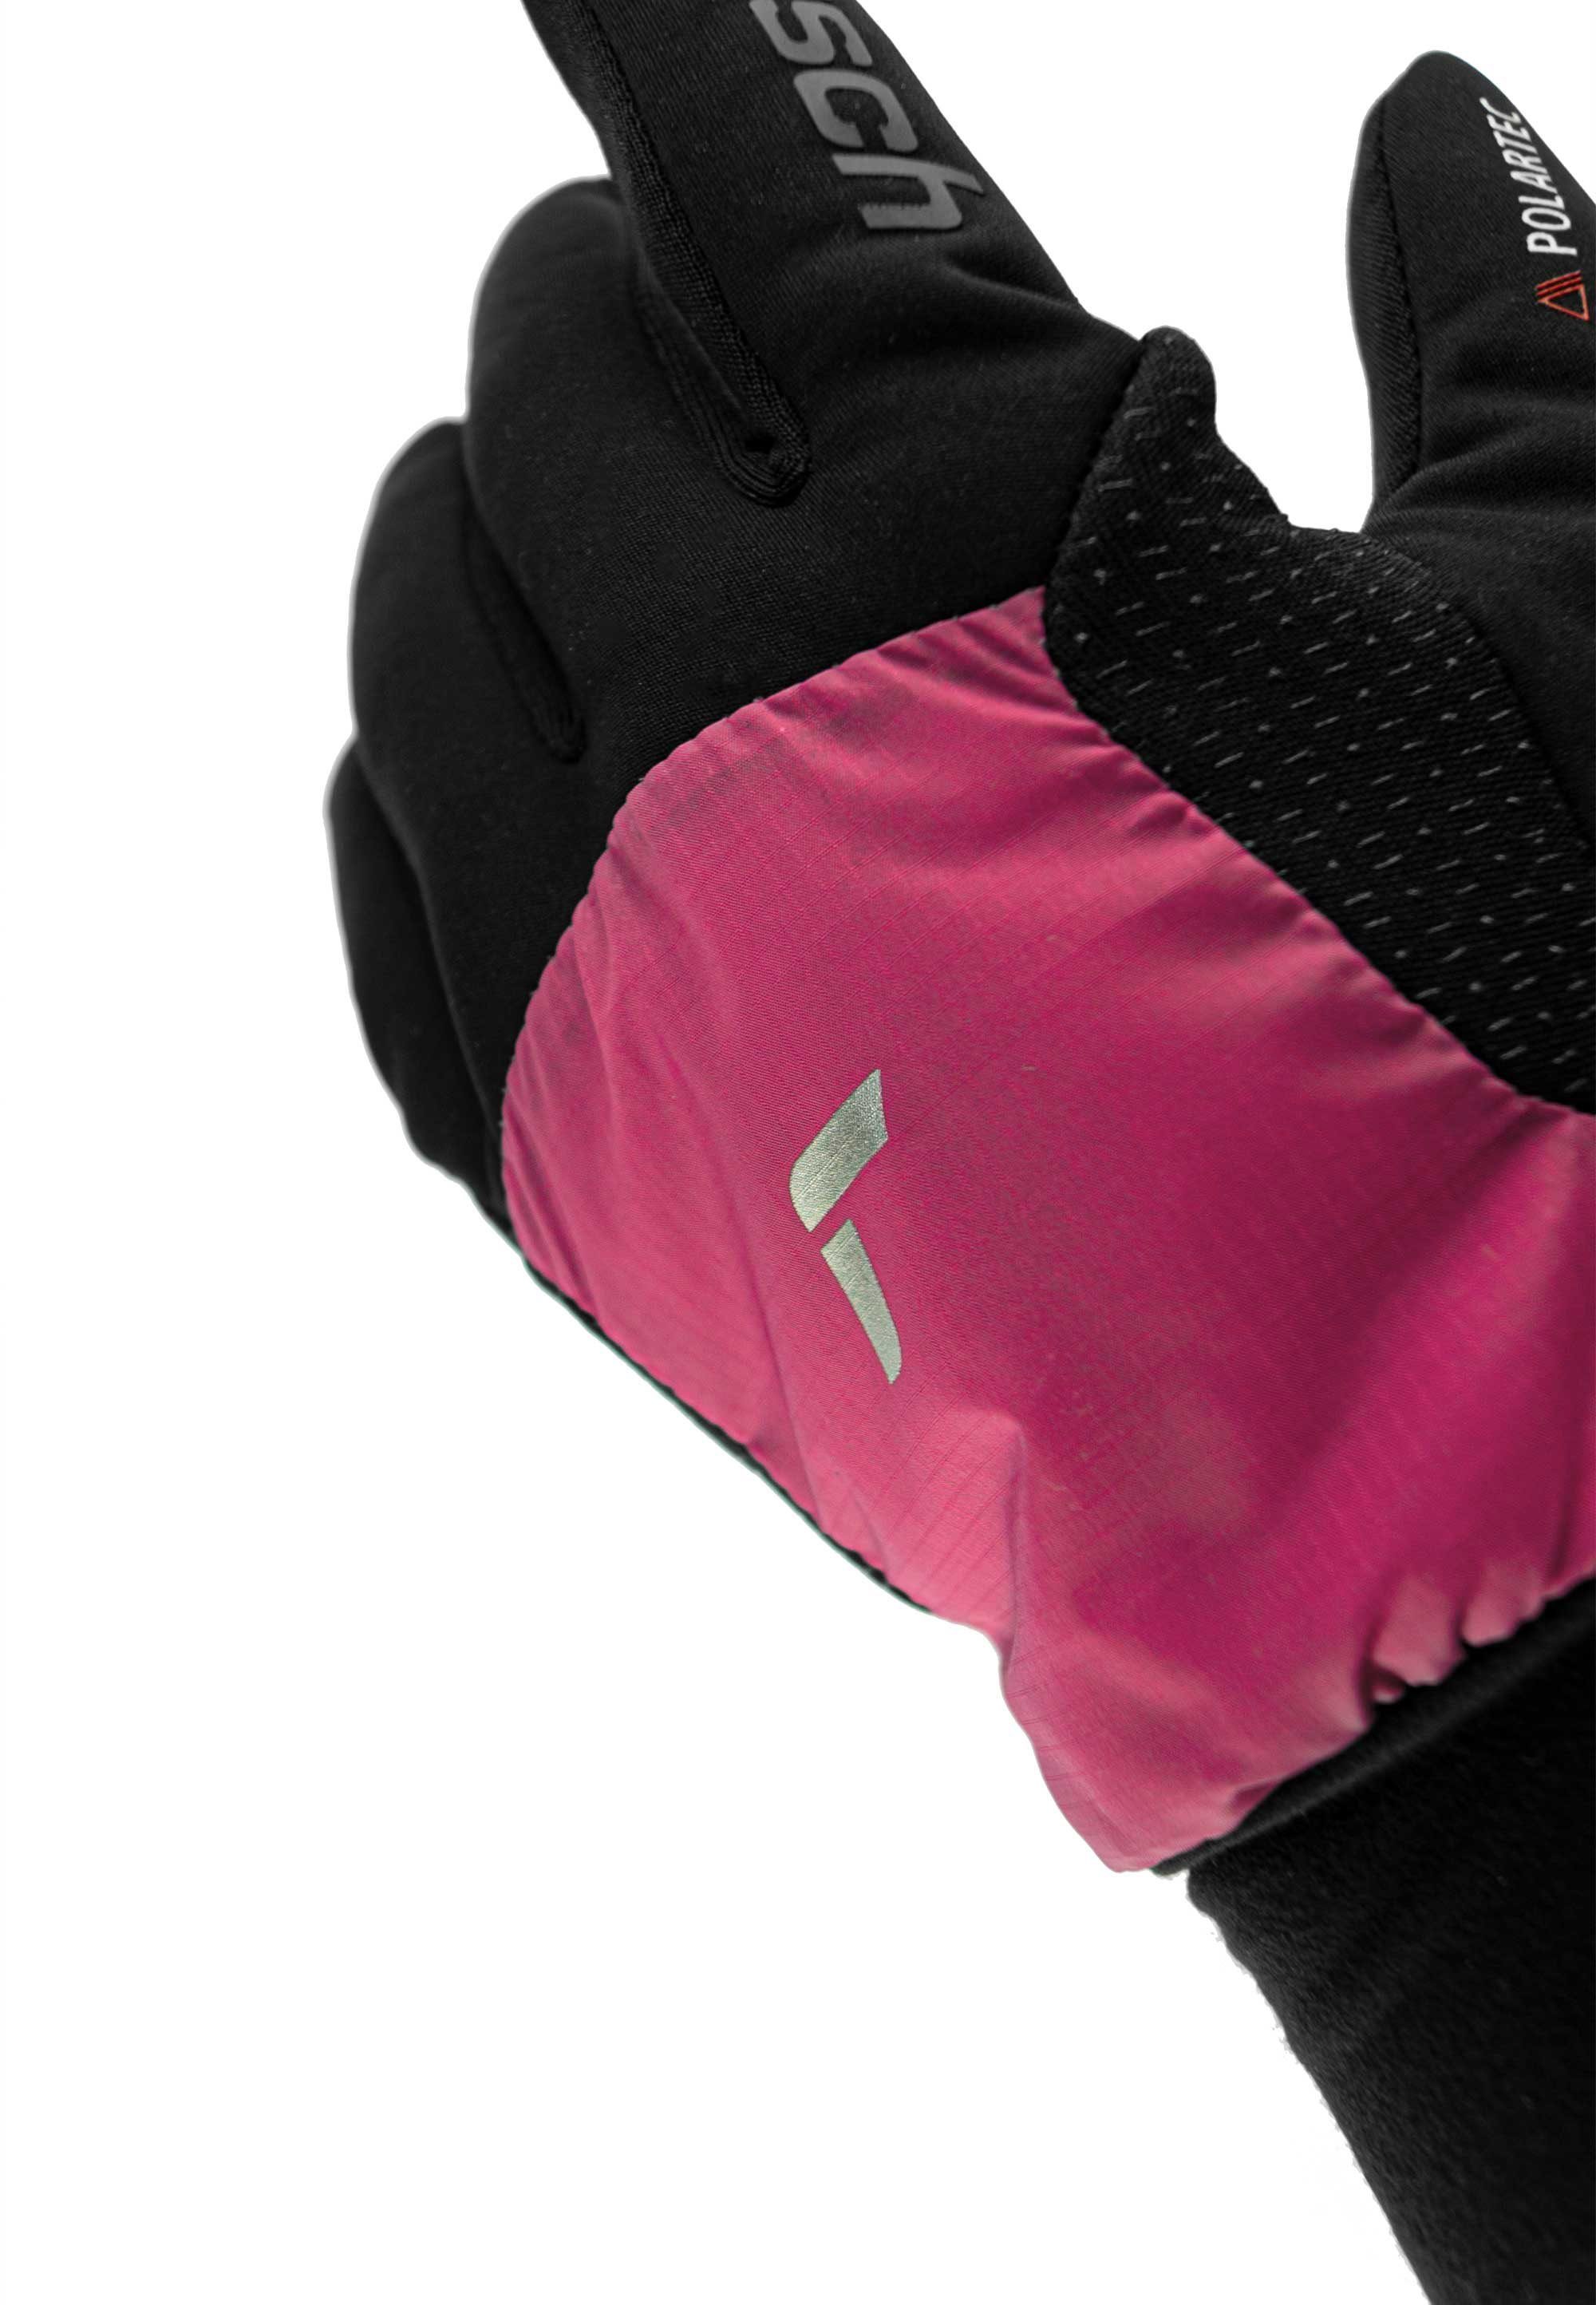 Reusch Skihandschuhe Garhwal Hybrid mit schwarz-pink Touchscreen-Funktion praktischer